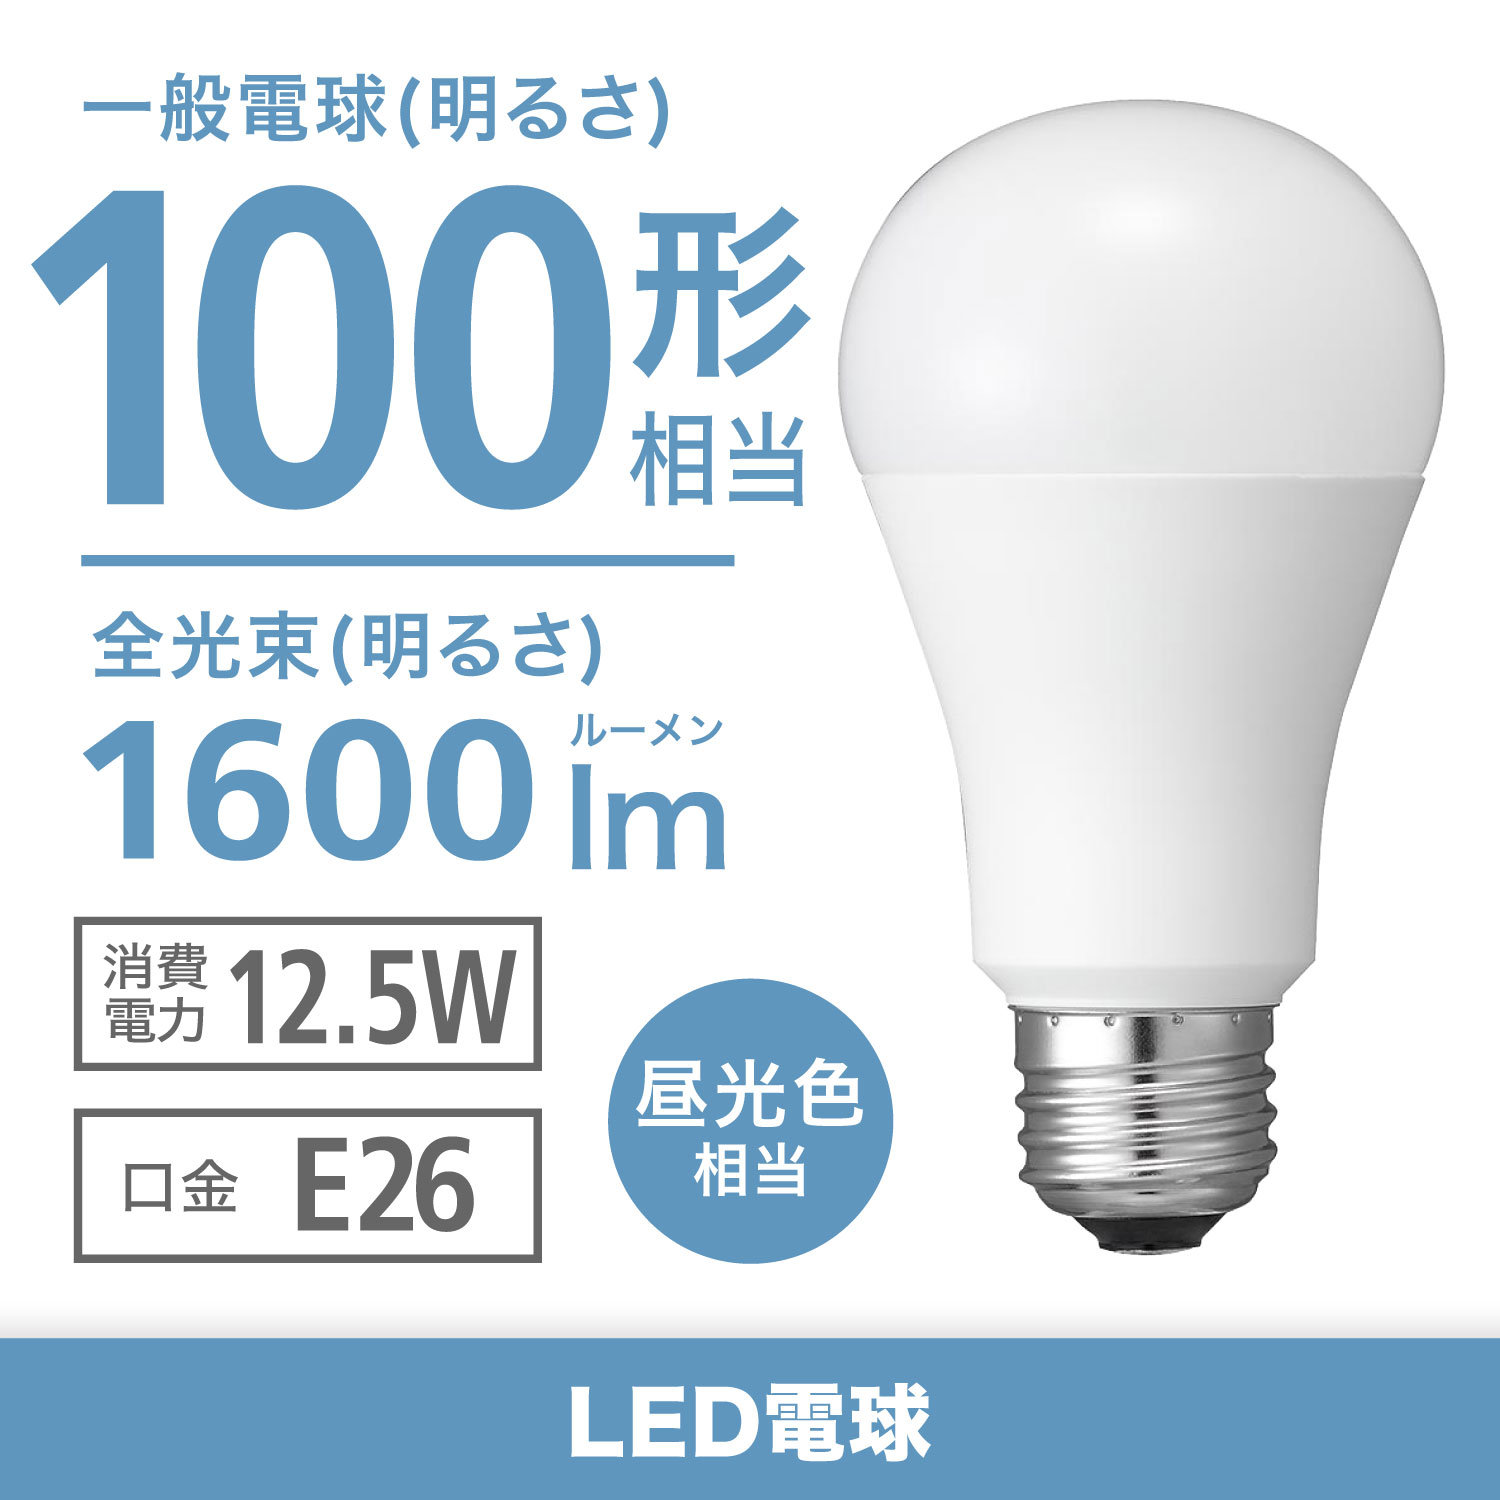 ロハス LED電球 E26口金 100W形相当 昼光色 14W 1700lm